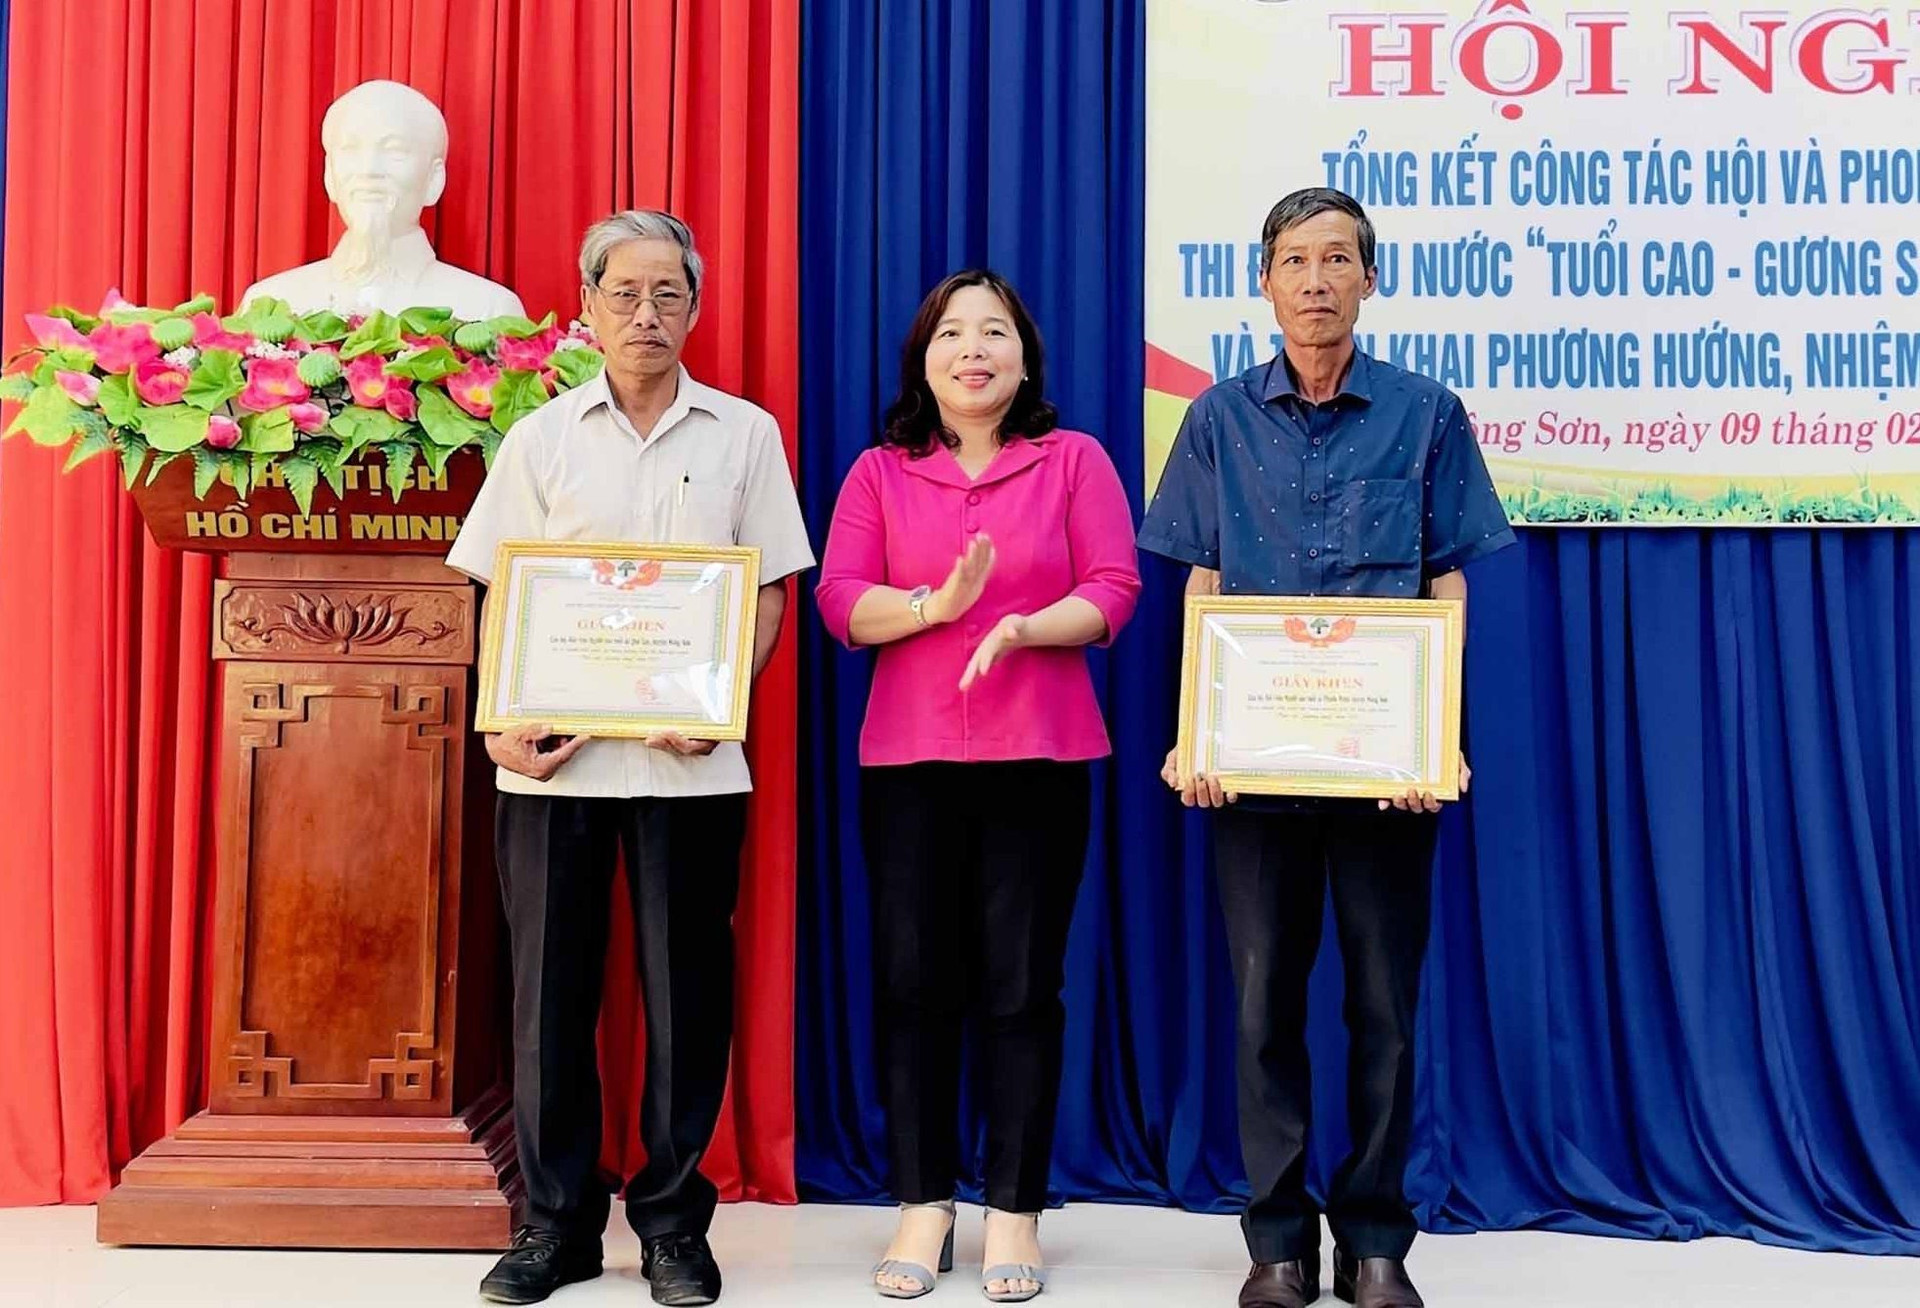 Phó Chủ tịch UBND huyện Nguyễn Thị Thu Thủy tặng giấy khen cho các tập thể xuất sắc trong phong trào “Tuổi cao gương sáng” năm 2022. Ảnh: TÂM LÊ